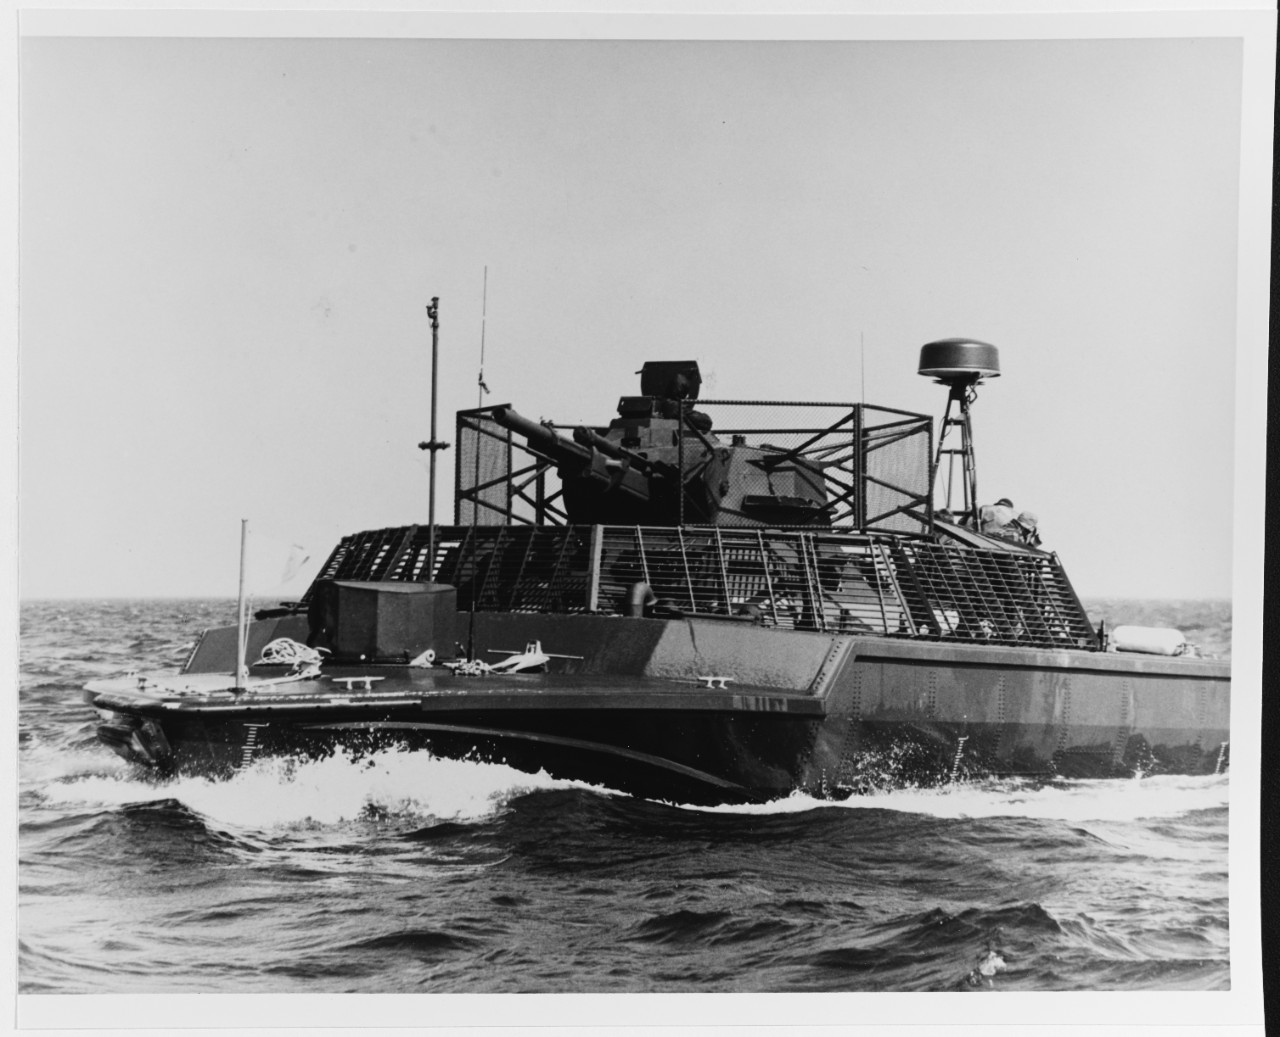 Assault support patrol boat (ASPB), Mark II